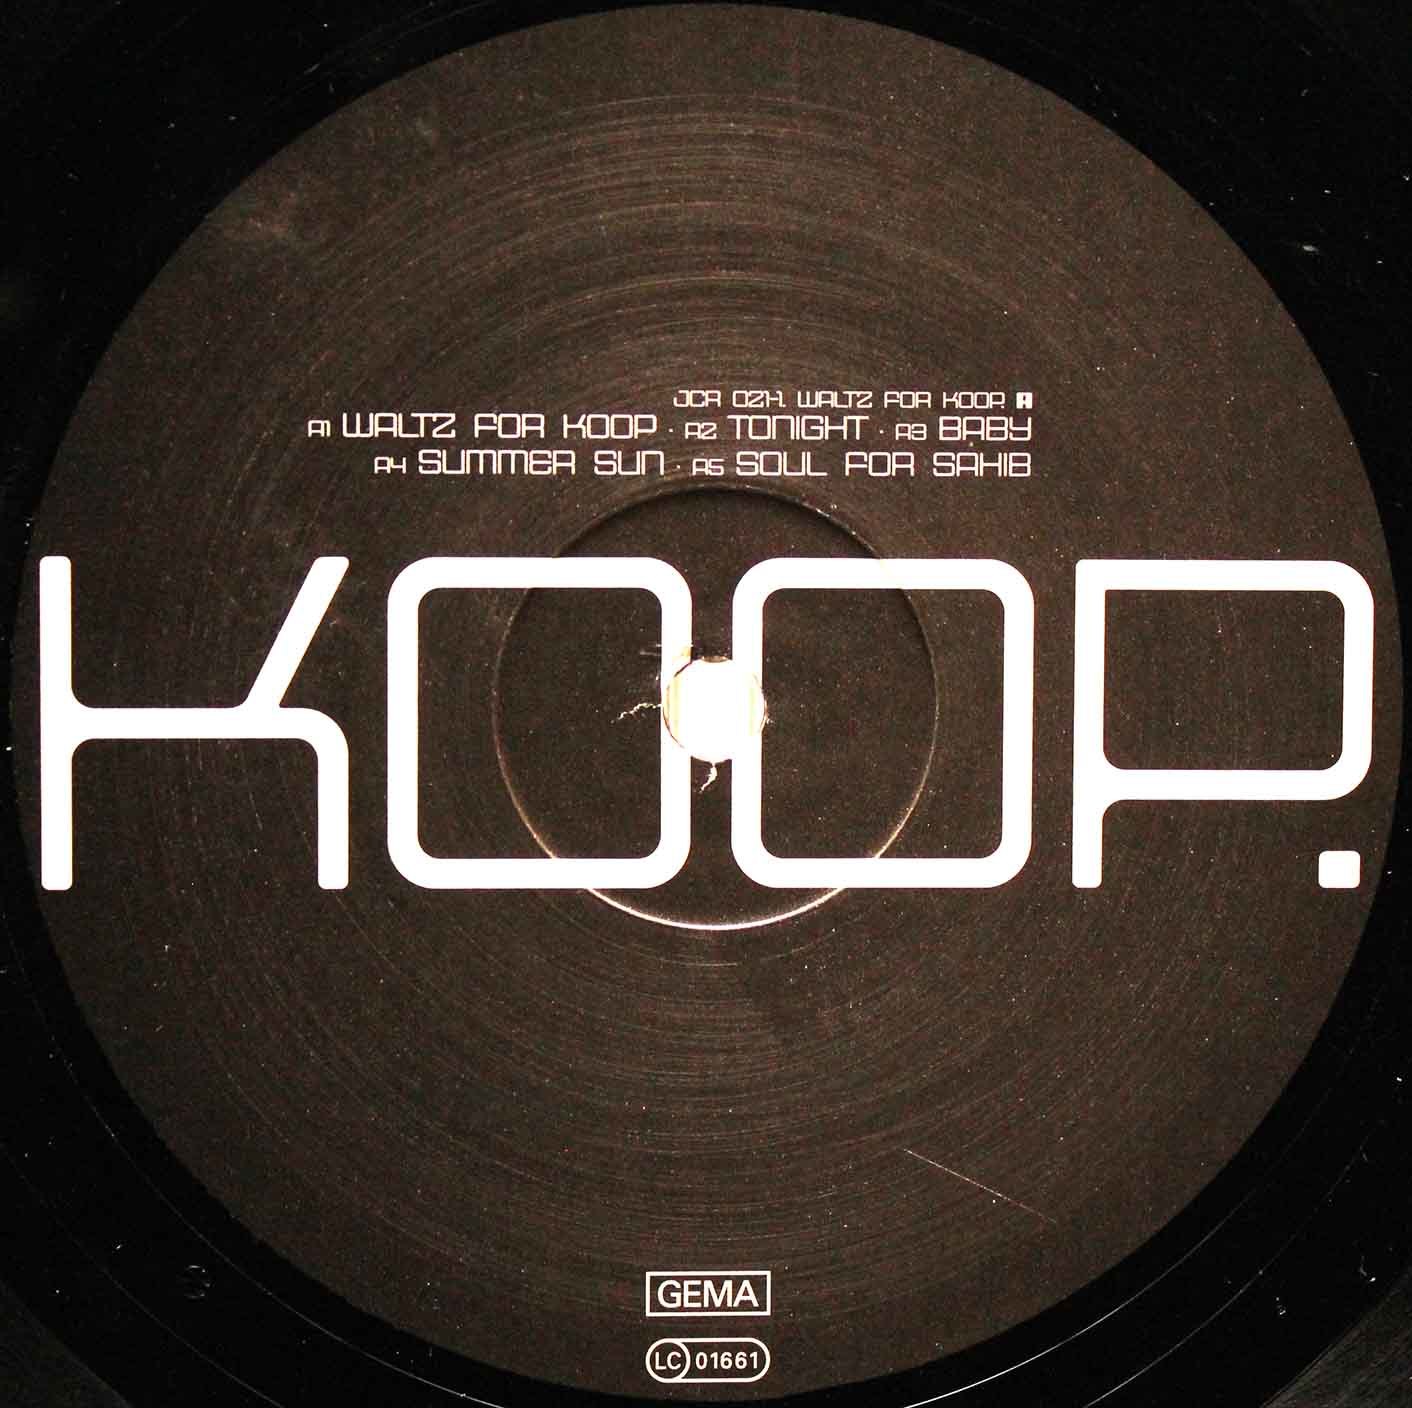 Koop (2001) – Waltz For Koop 03